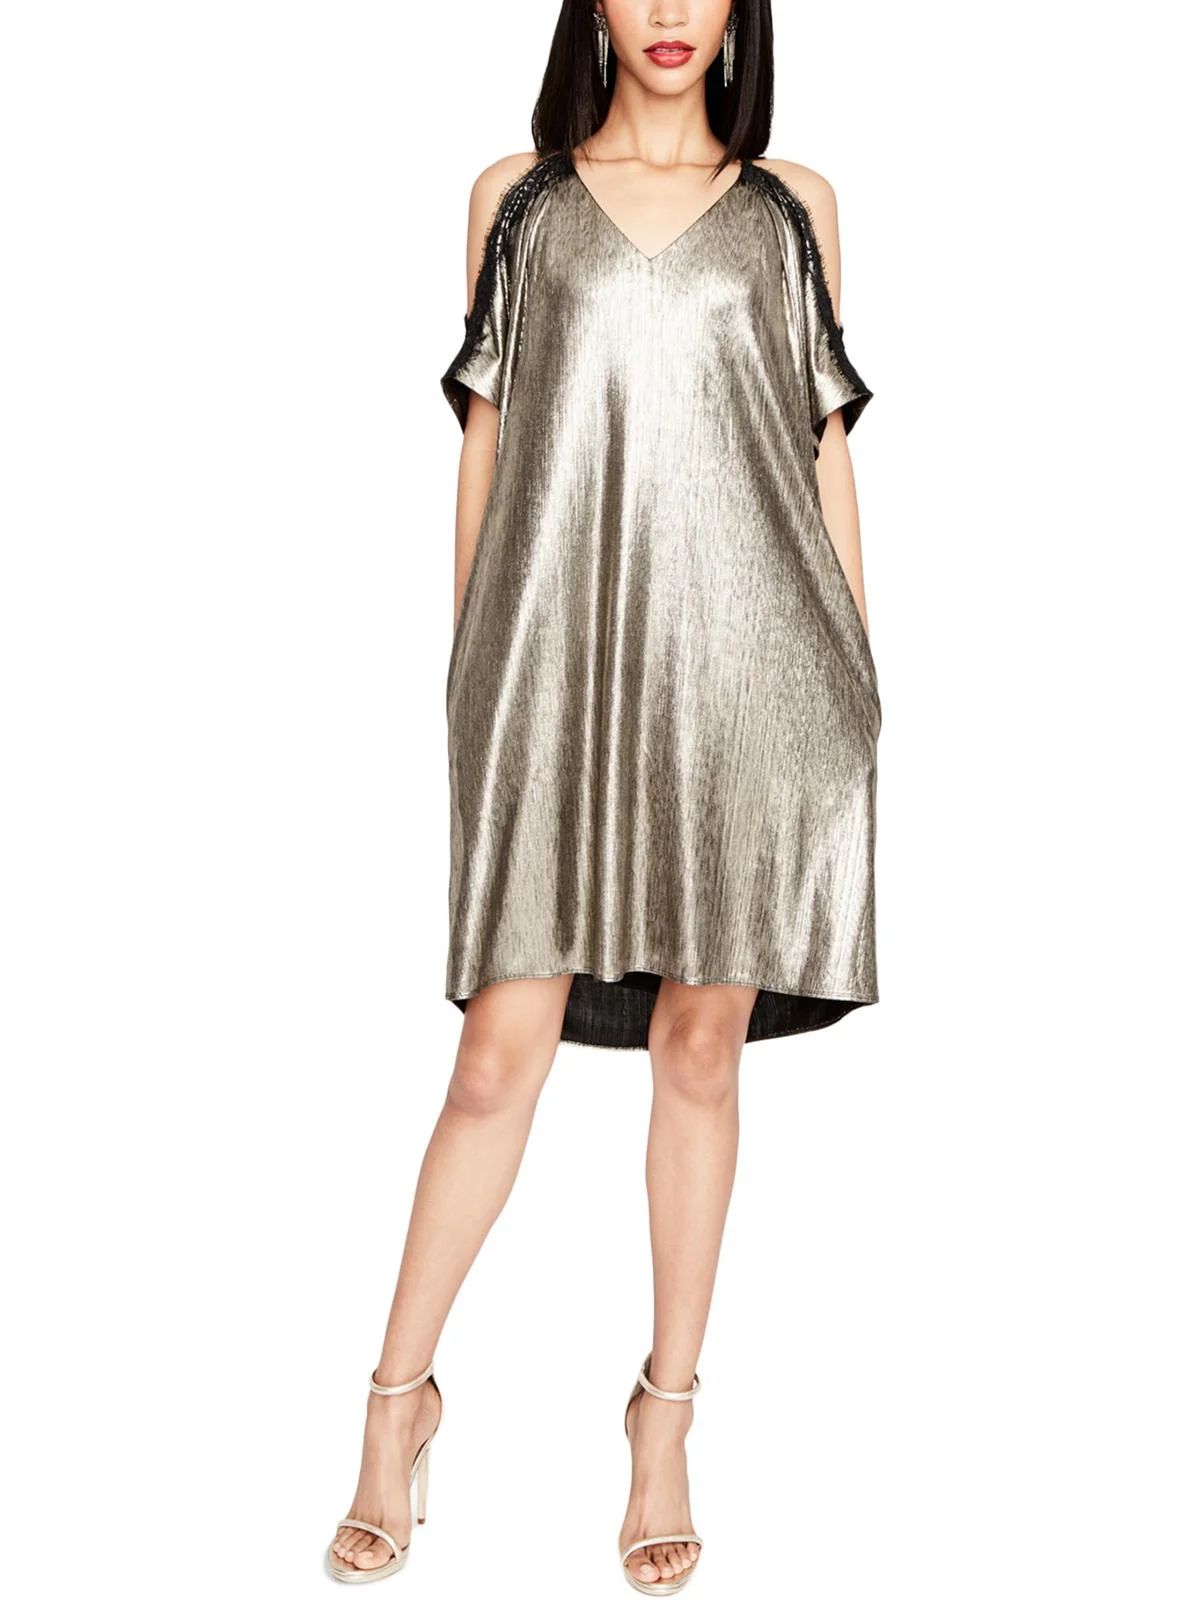 Rachel Rachel Roy Womens Metallic Cold Shoulder Party Dress Gold S | Walmart (US)